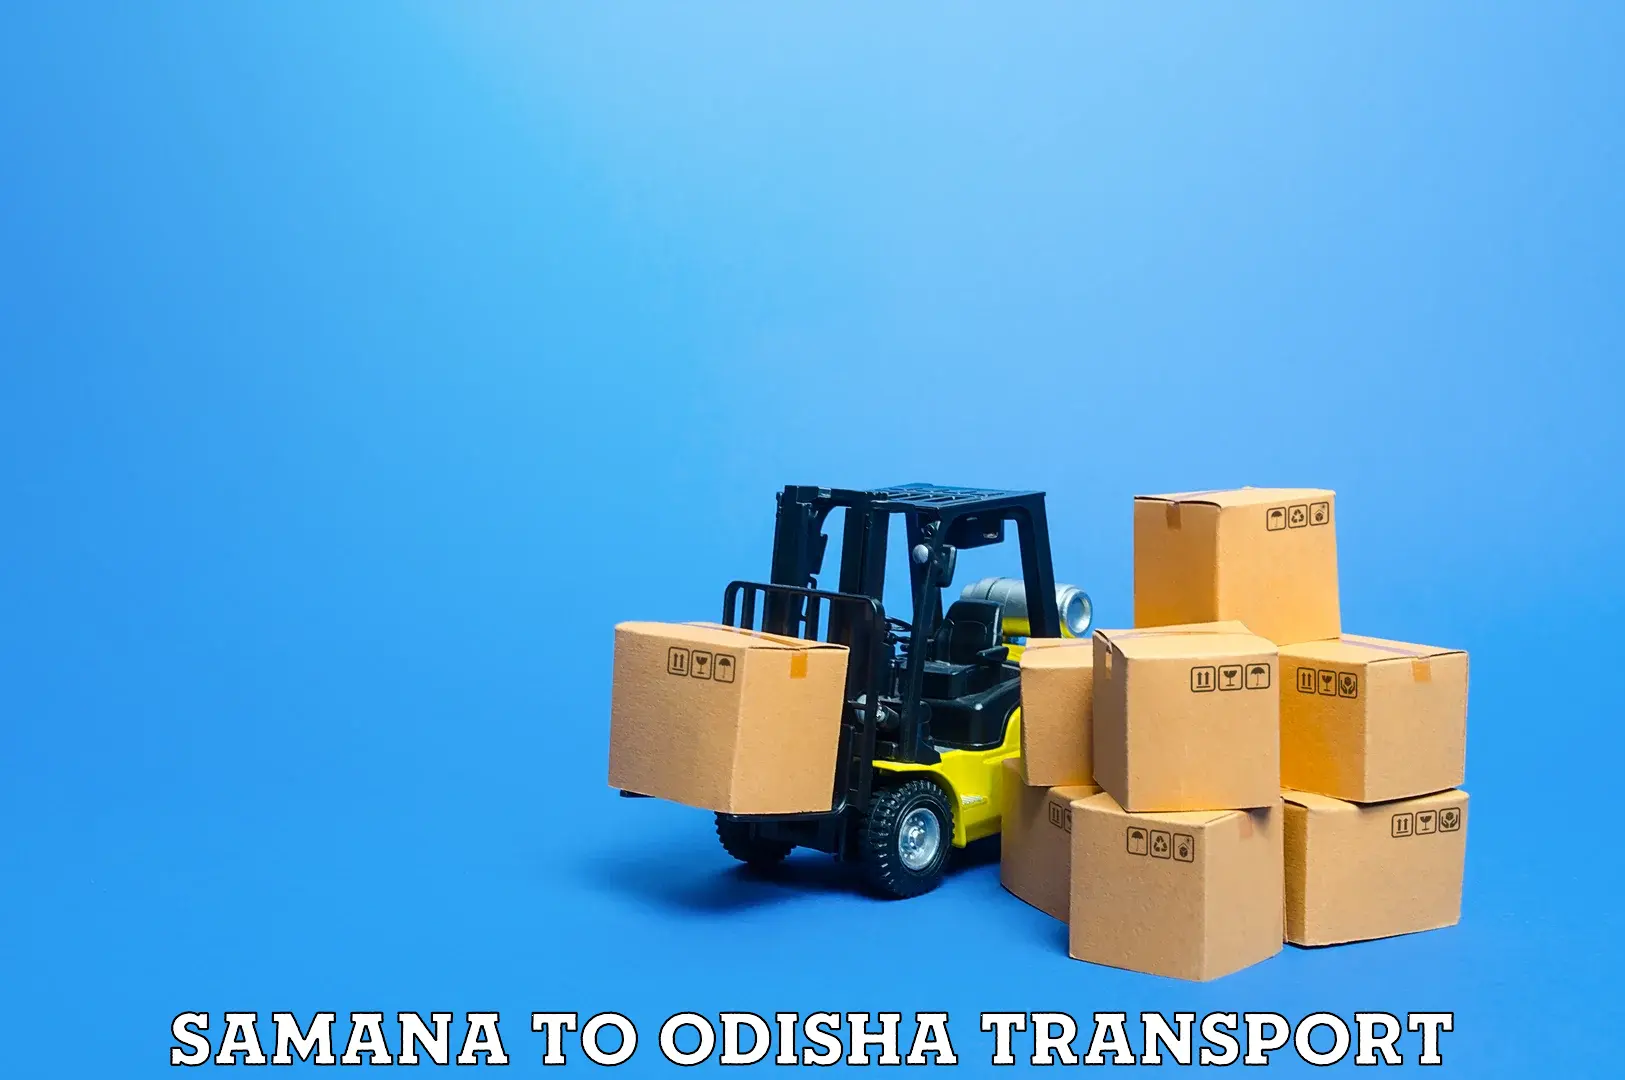 Air freight transport services Samana to Raruan